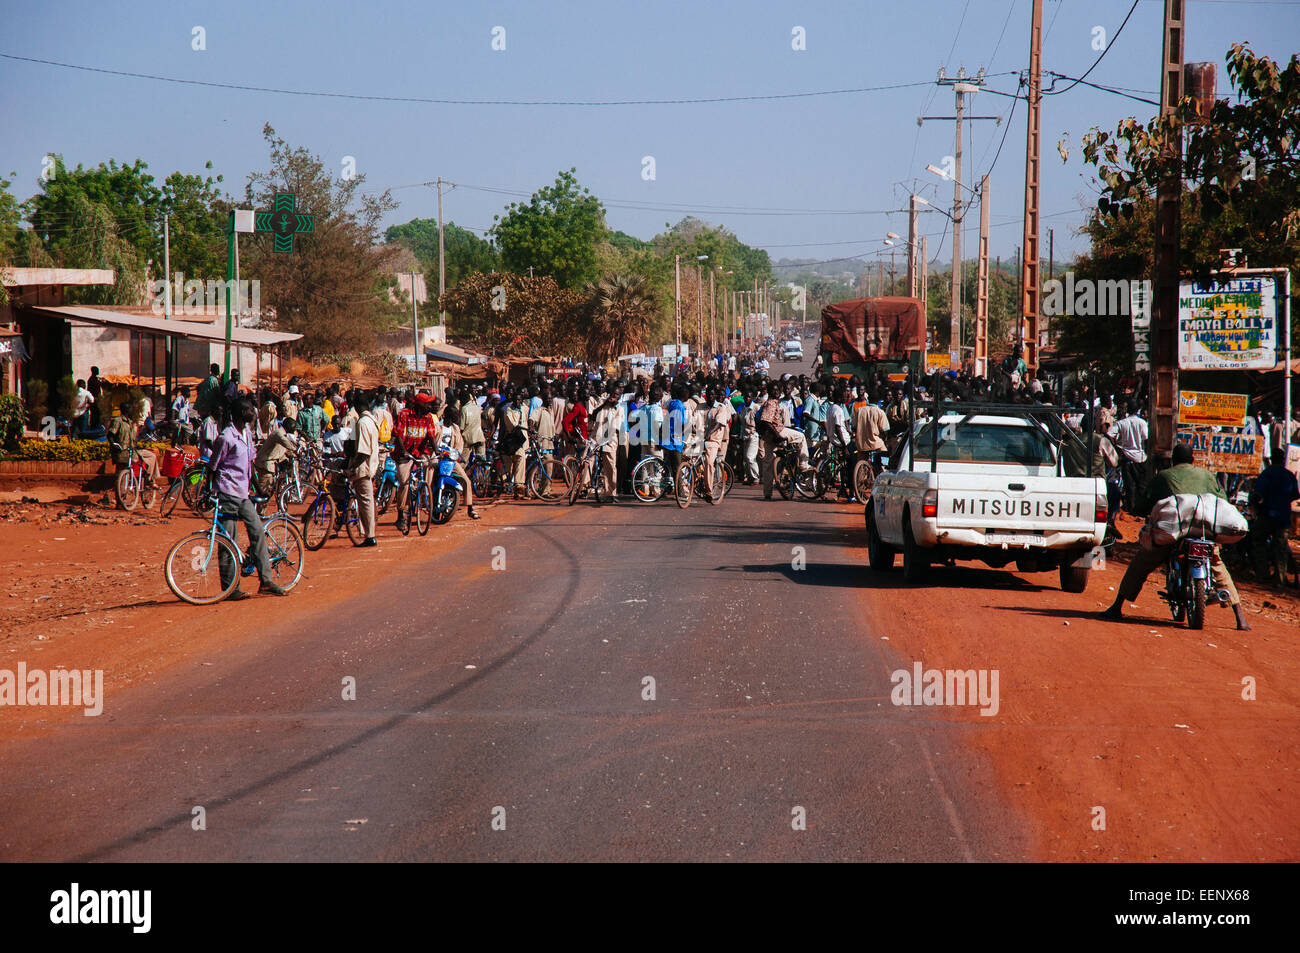 Blocs de démonstration étudiants road, Burkina Faso. Banque D'Images